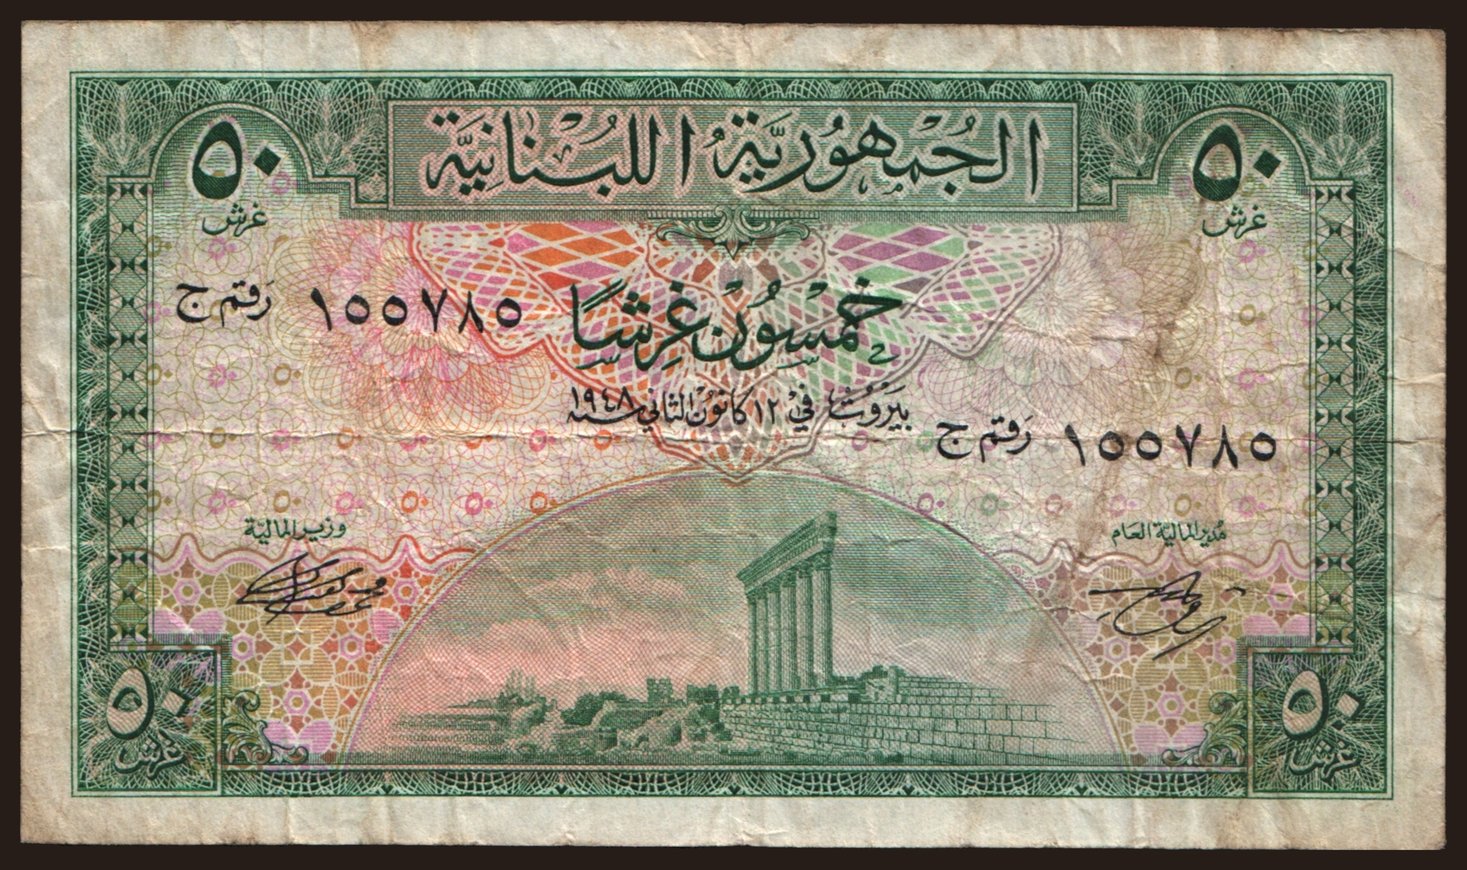 50 piastres, 1948